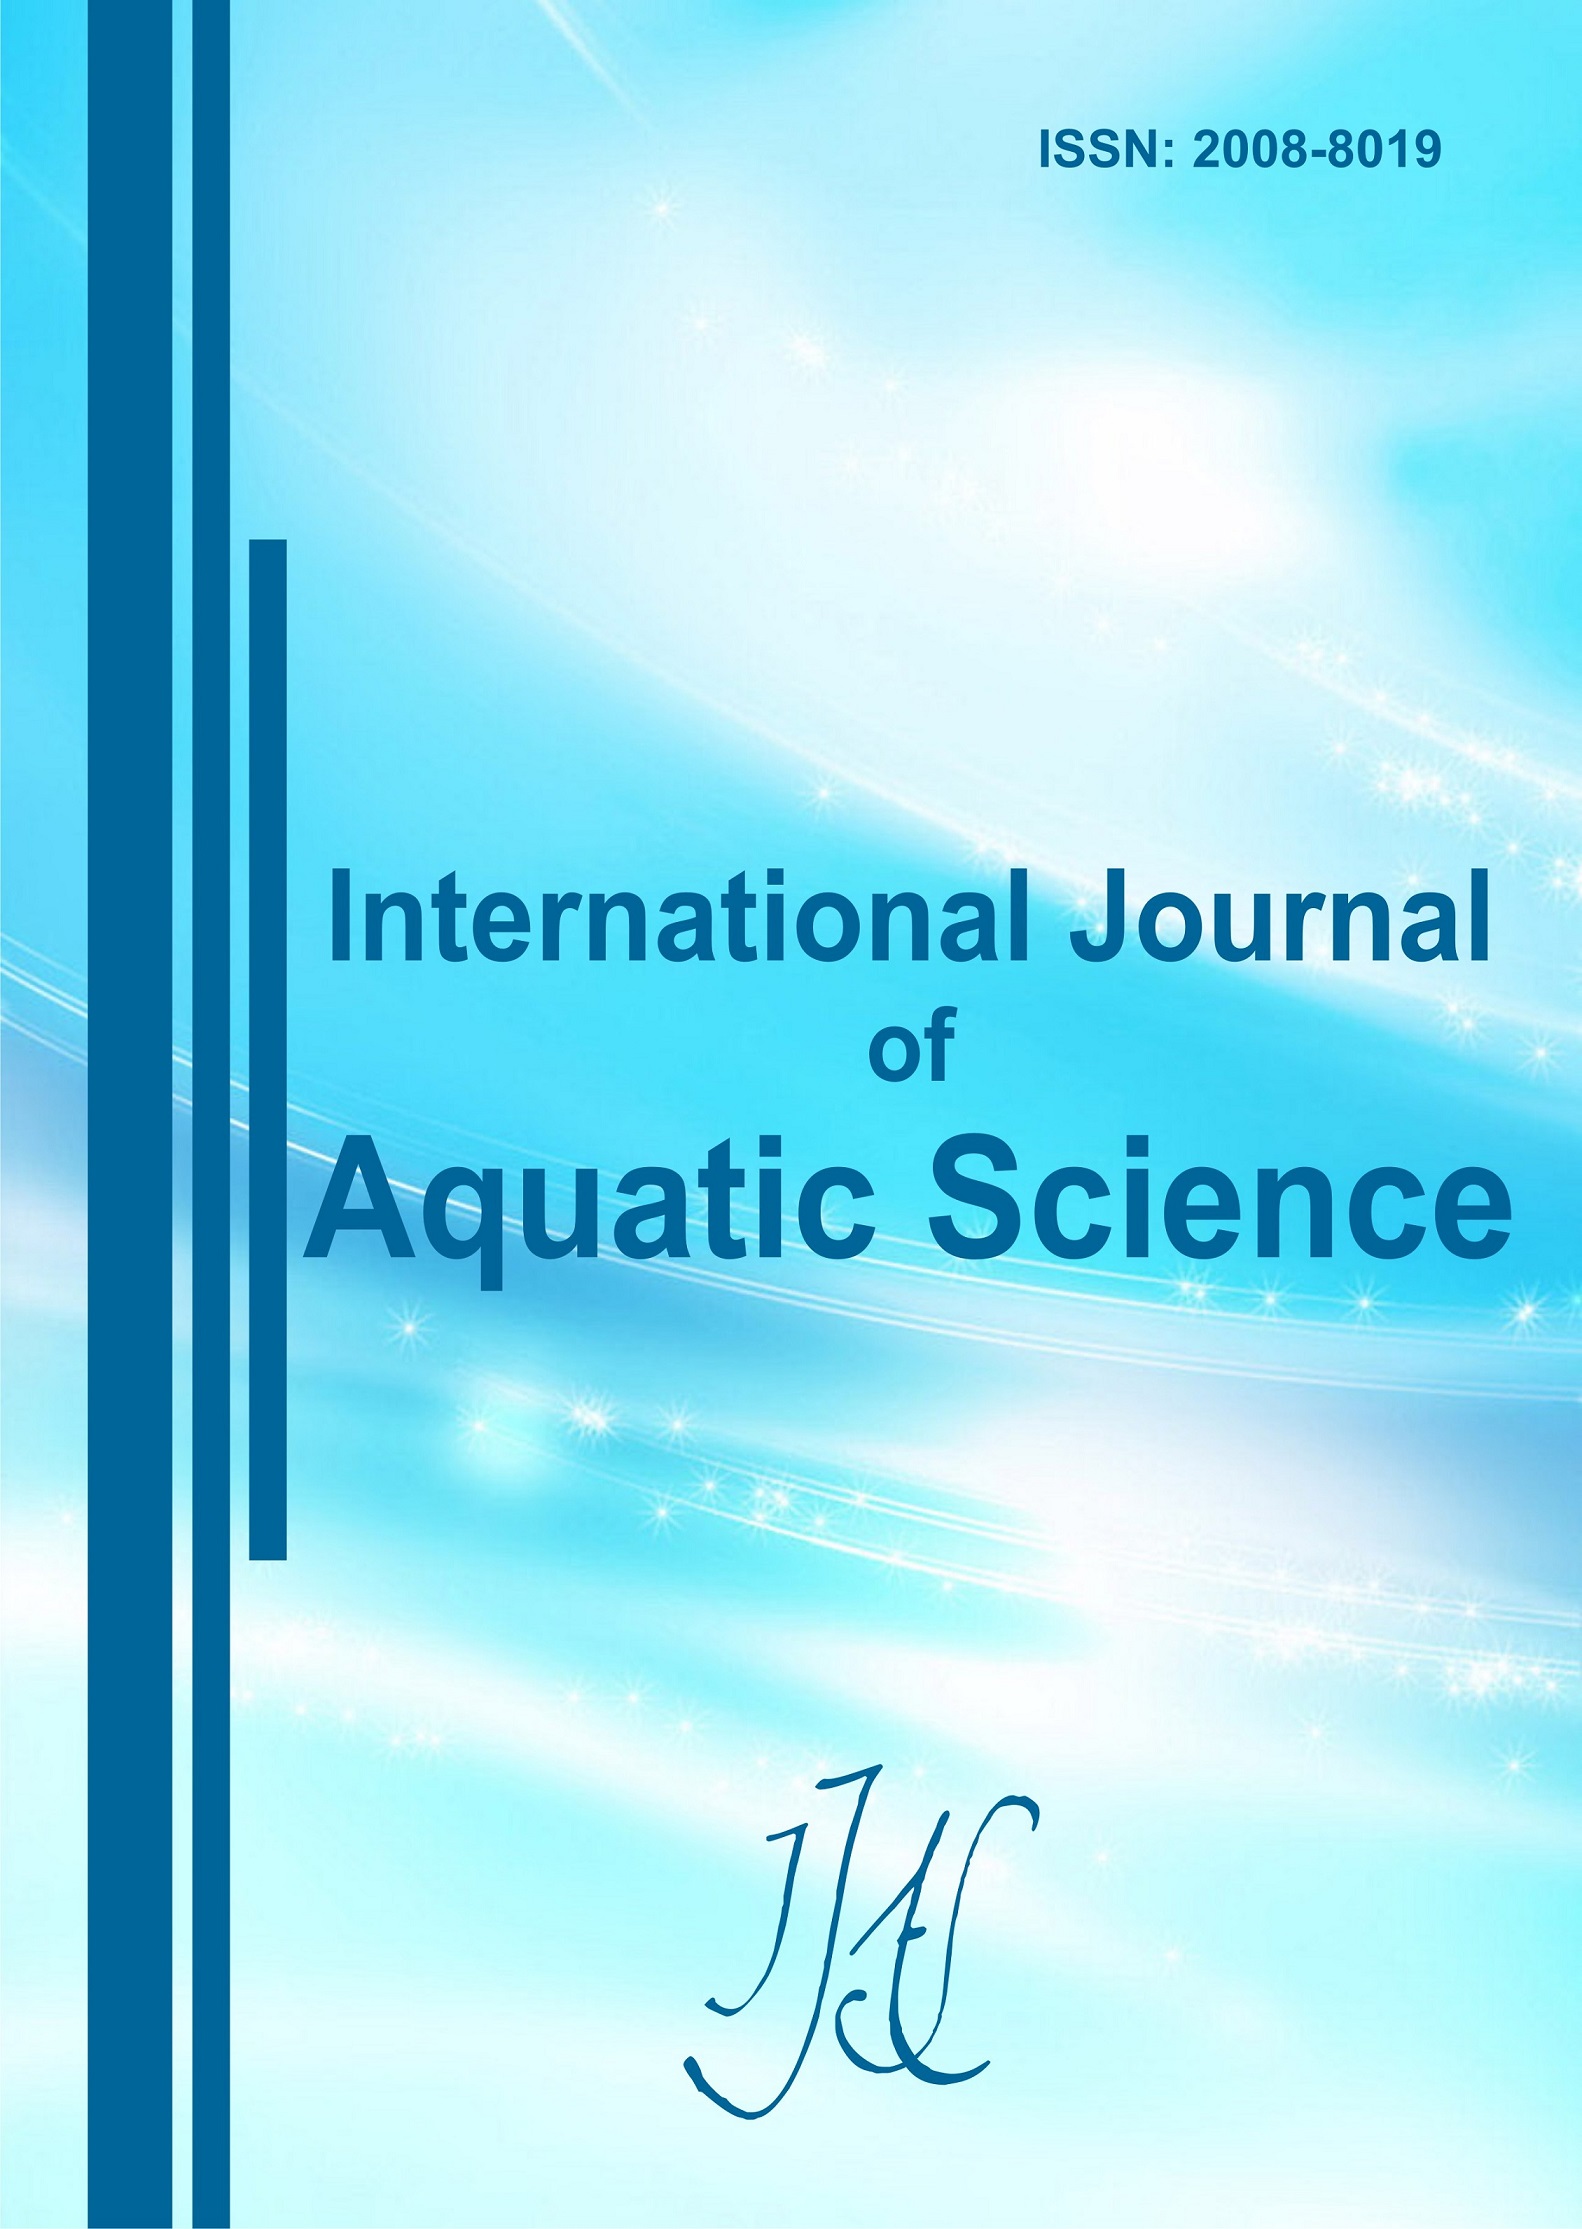 Int. J. of Aquatic Science